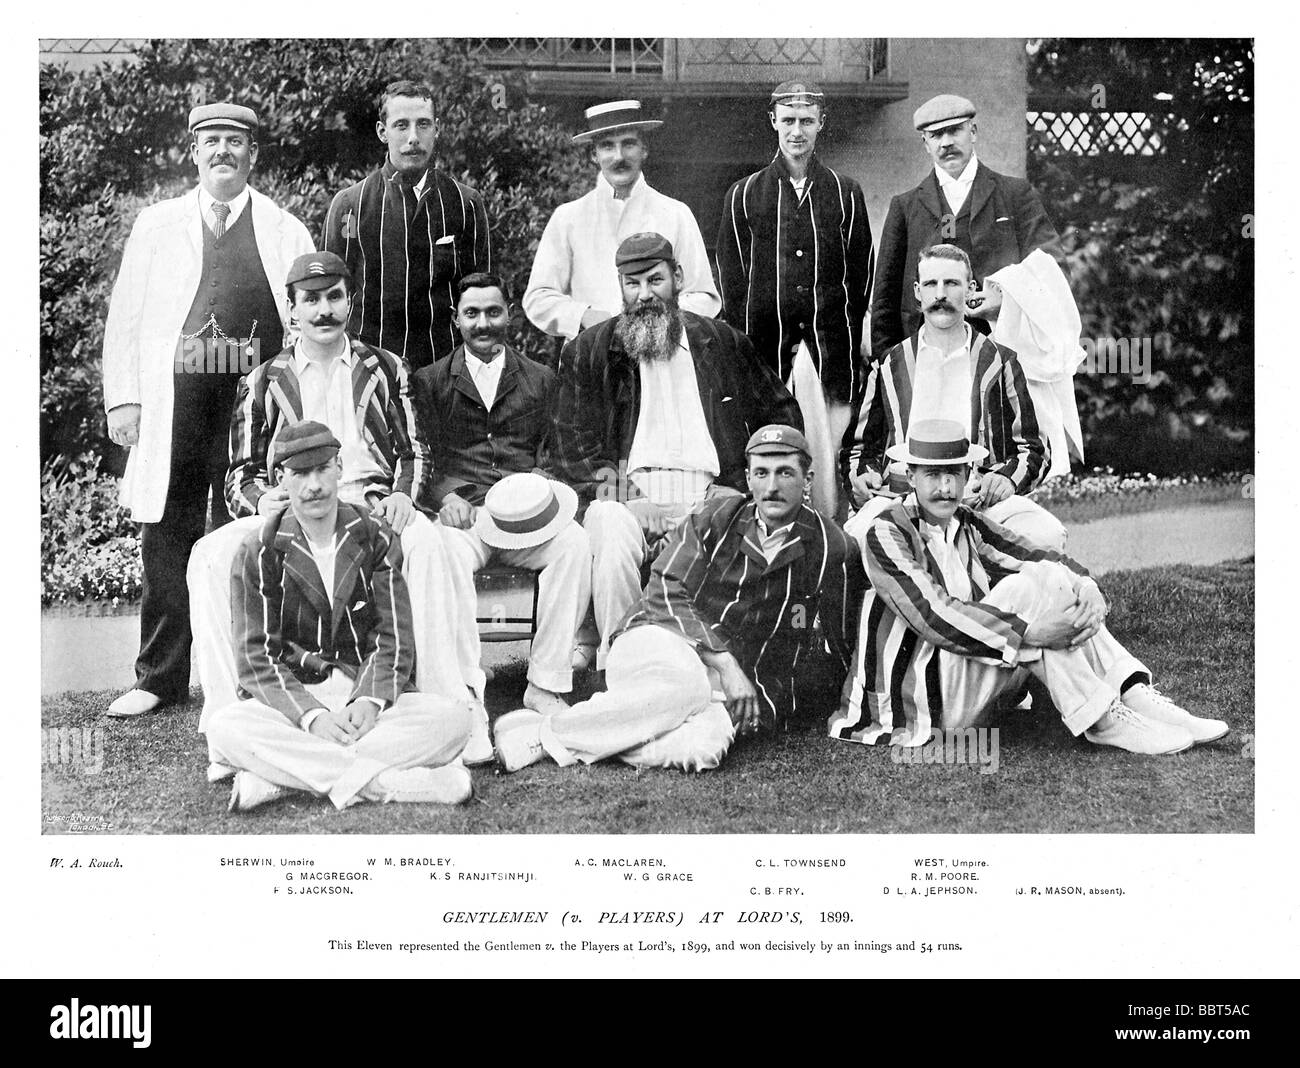 Herren V Spieler 1899 Foto von der Amateurmannschaft, die den Profis auf Lords von einem Innings und 54 Runs schlagen Stockfoto